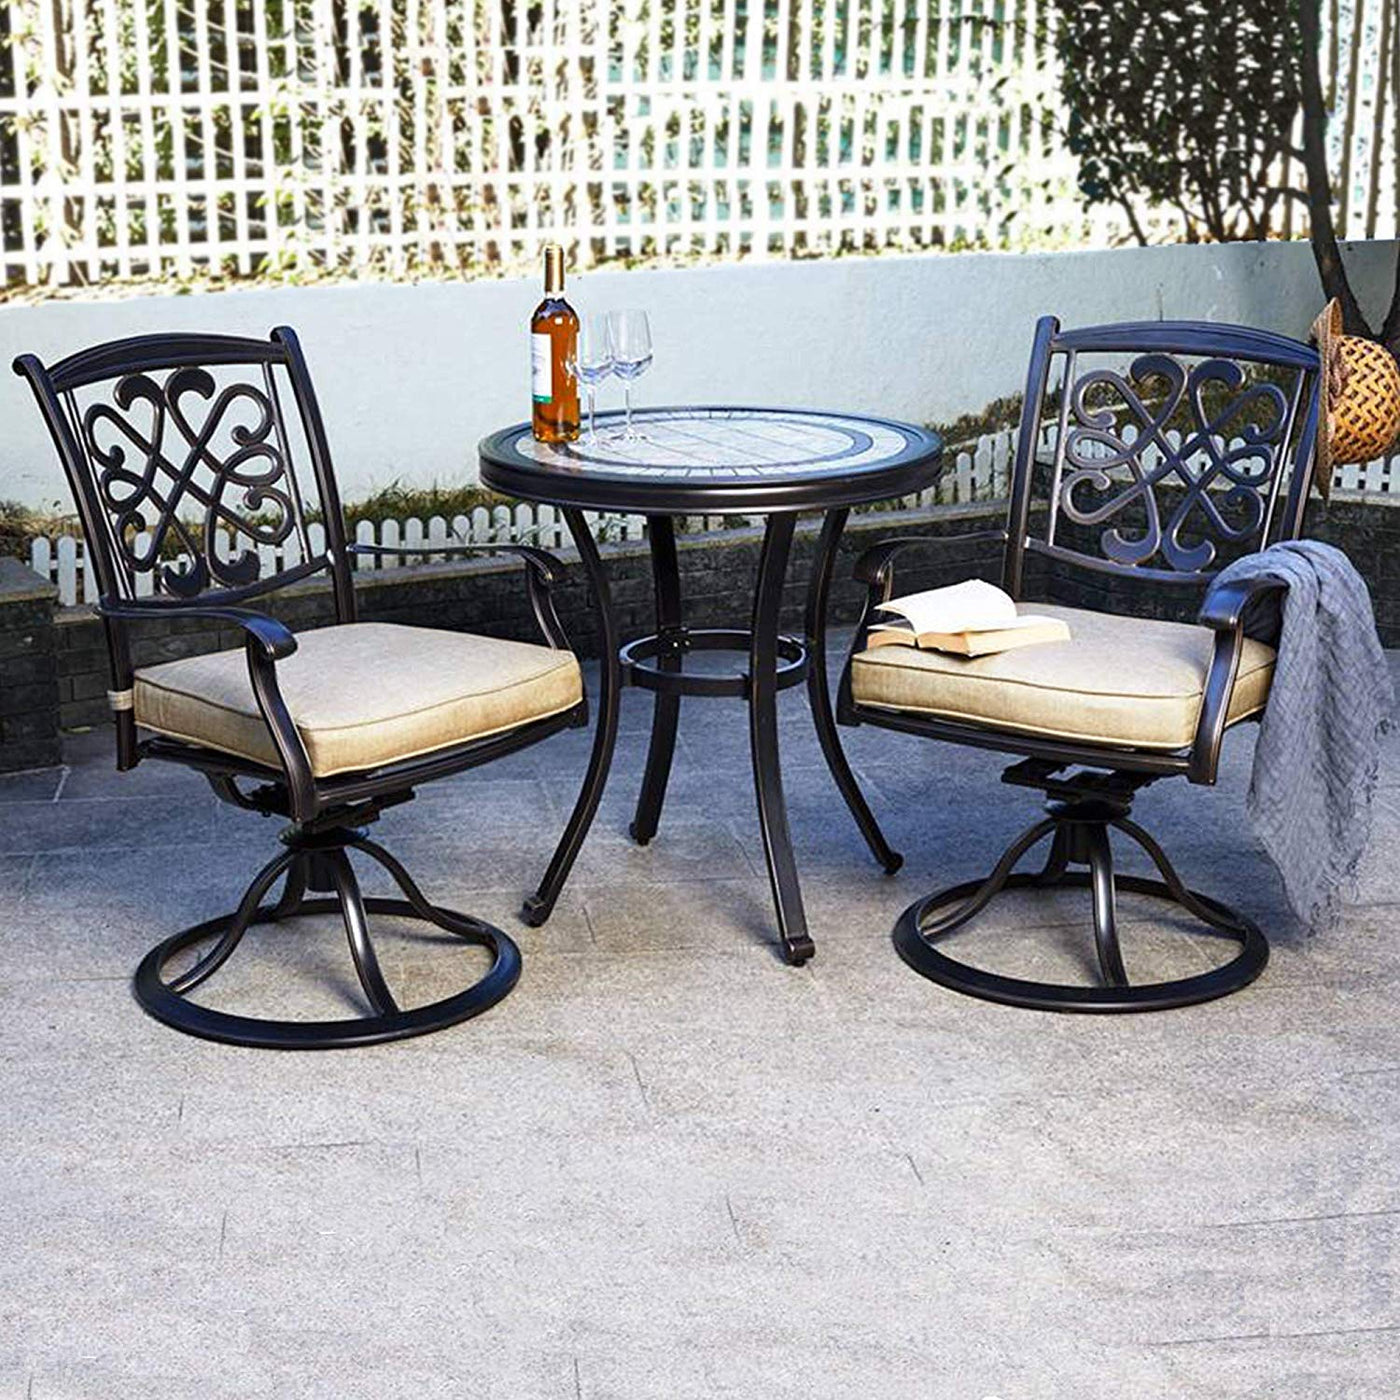 3 Piece Bistro Round Table Patio Glider Chairs Garden Backyard Outdoor Furniture